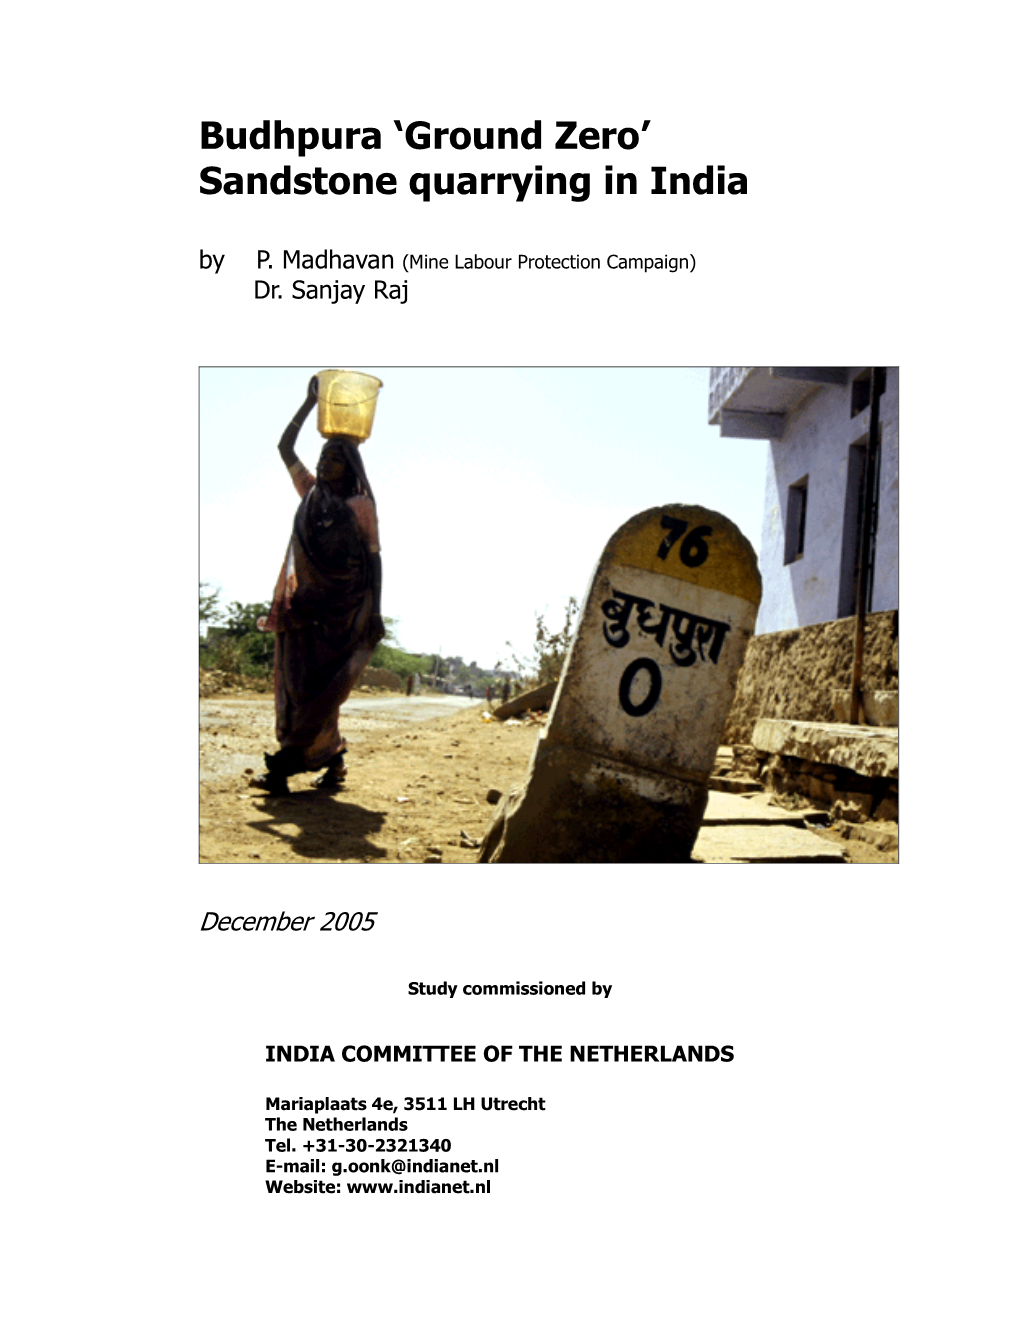 Budhpura 'Ground Zero' Sandstone Quarrying in India